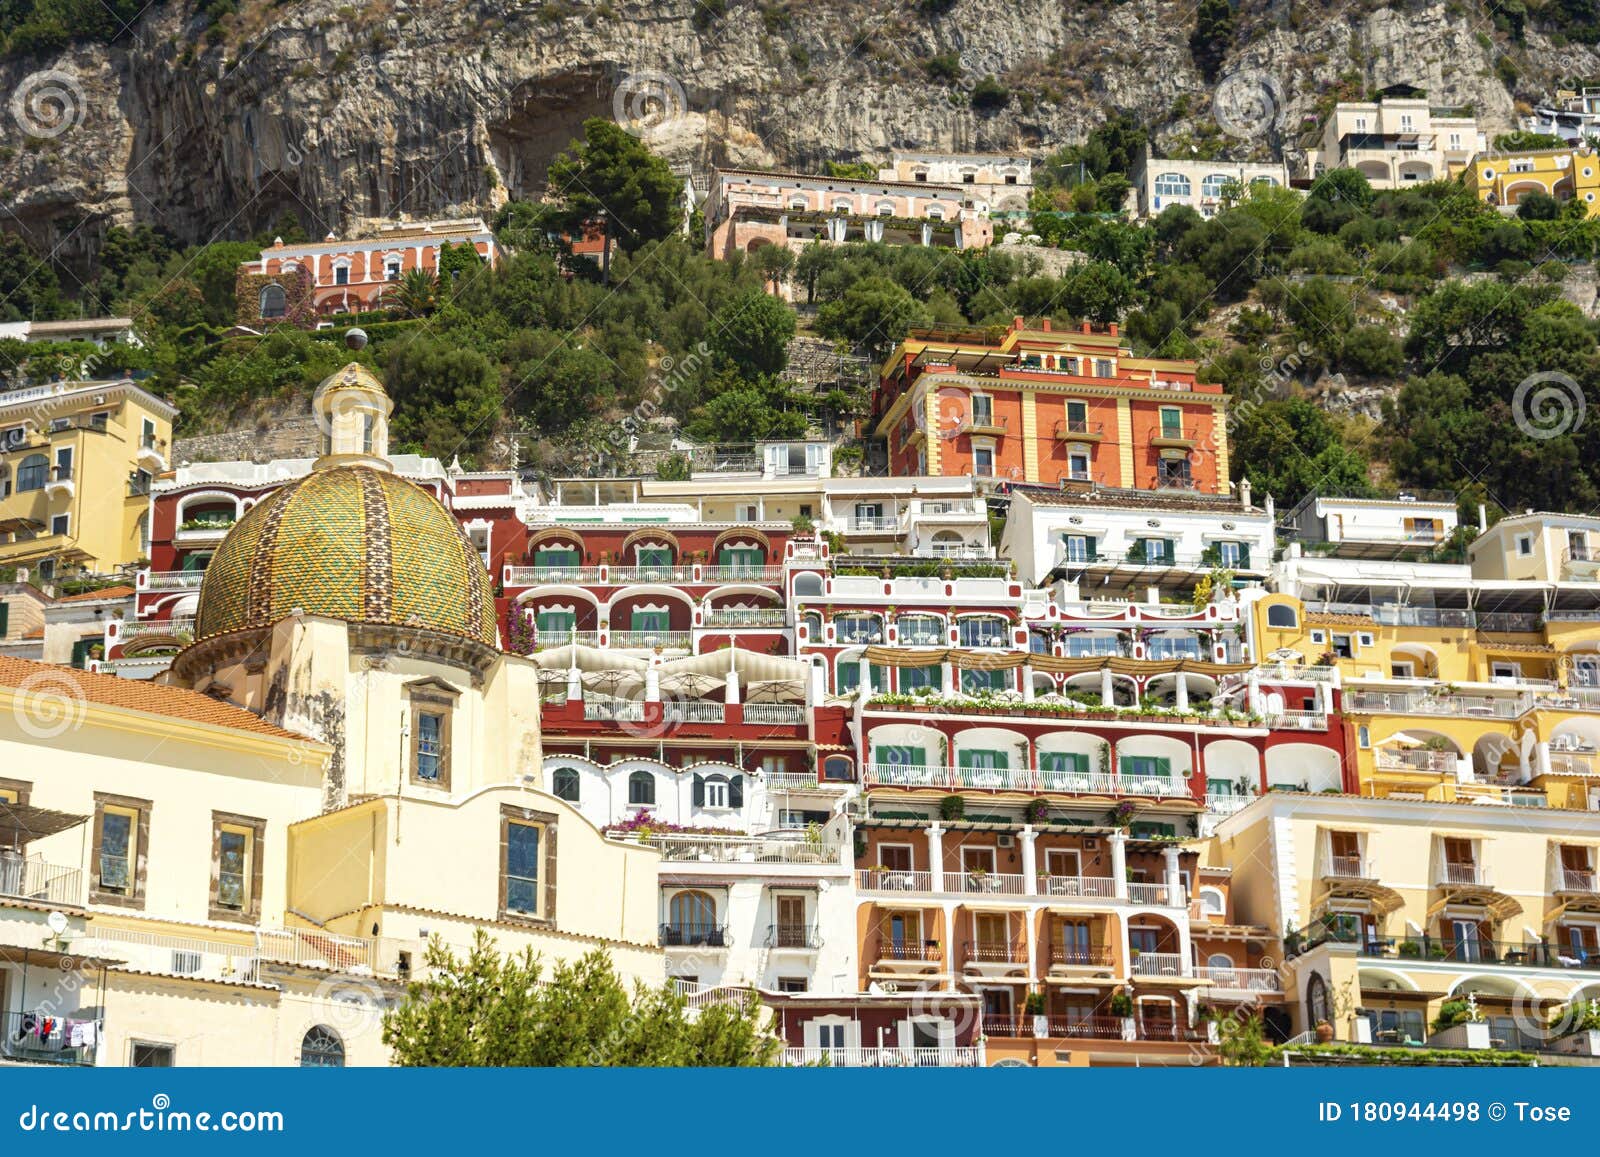 Positano Village, Amalfi Coast, Italy Stock Photo - Image of tourism ...